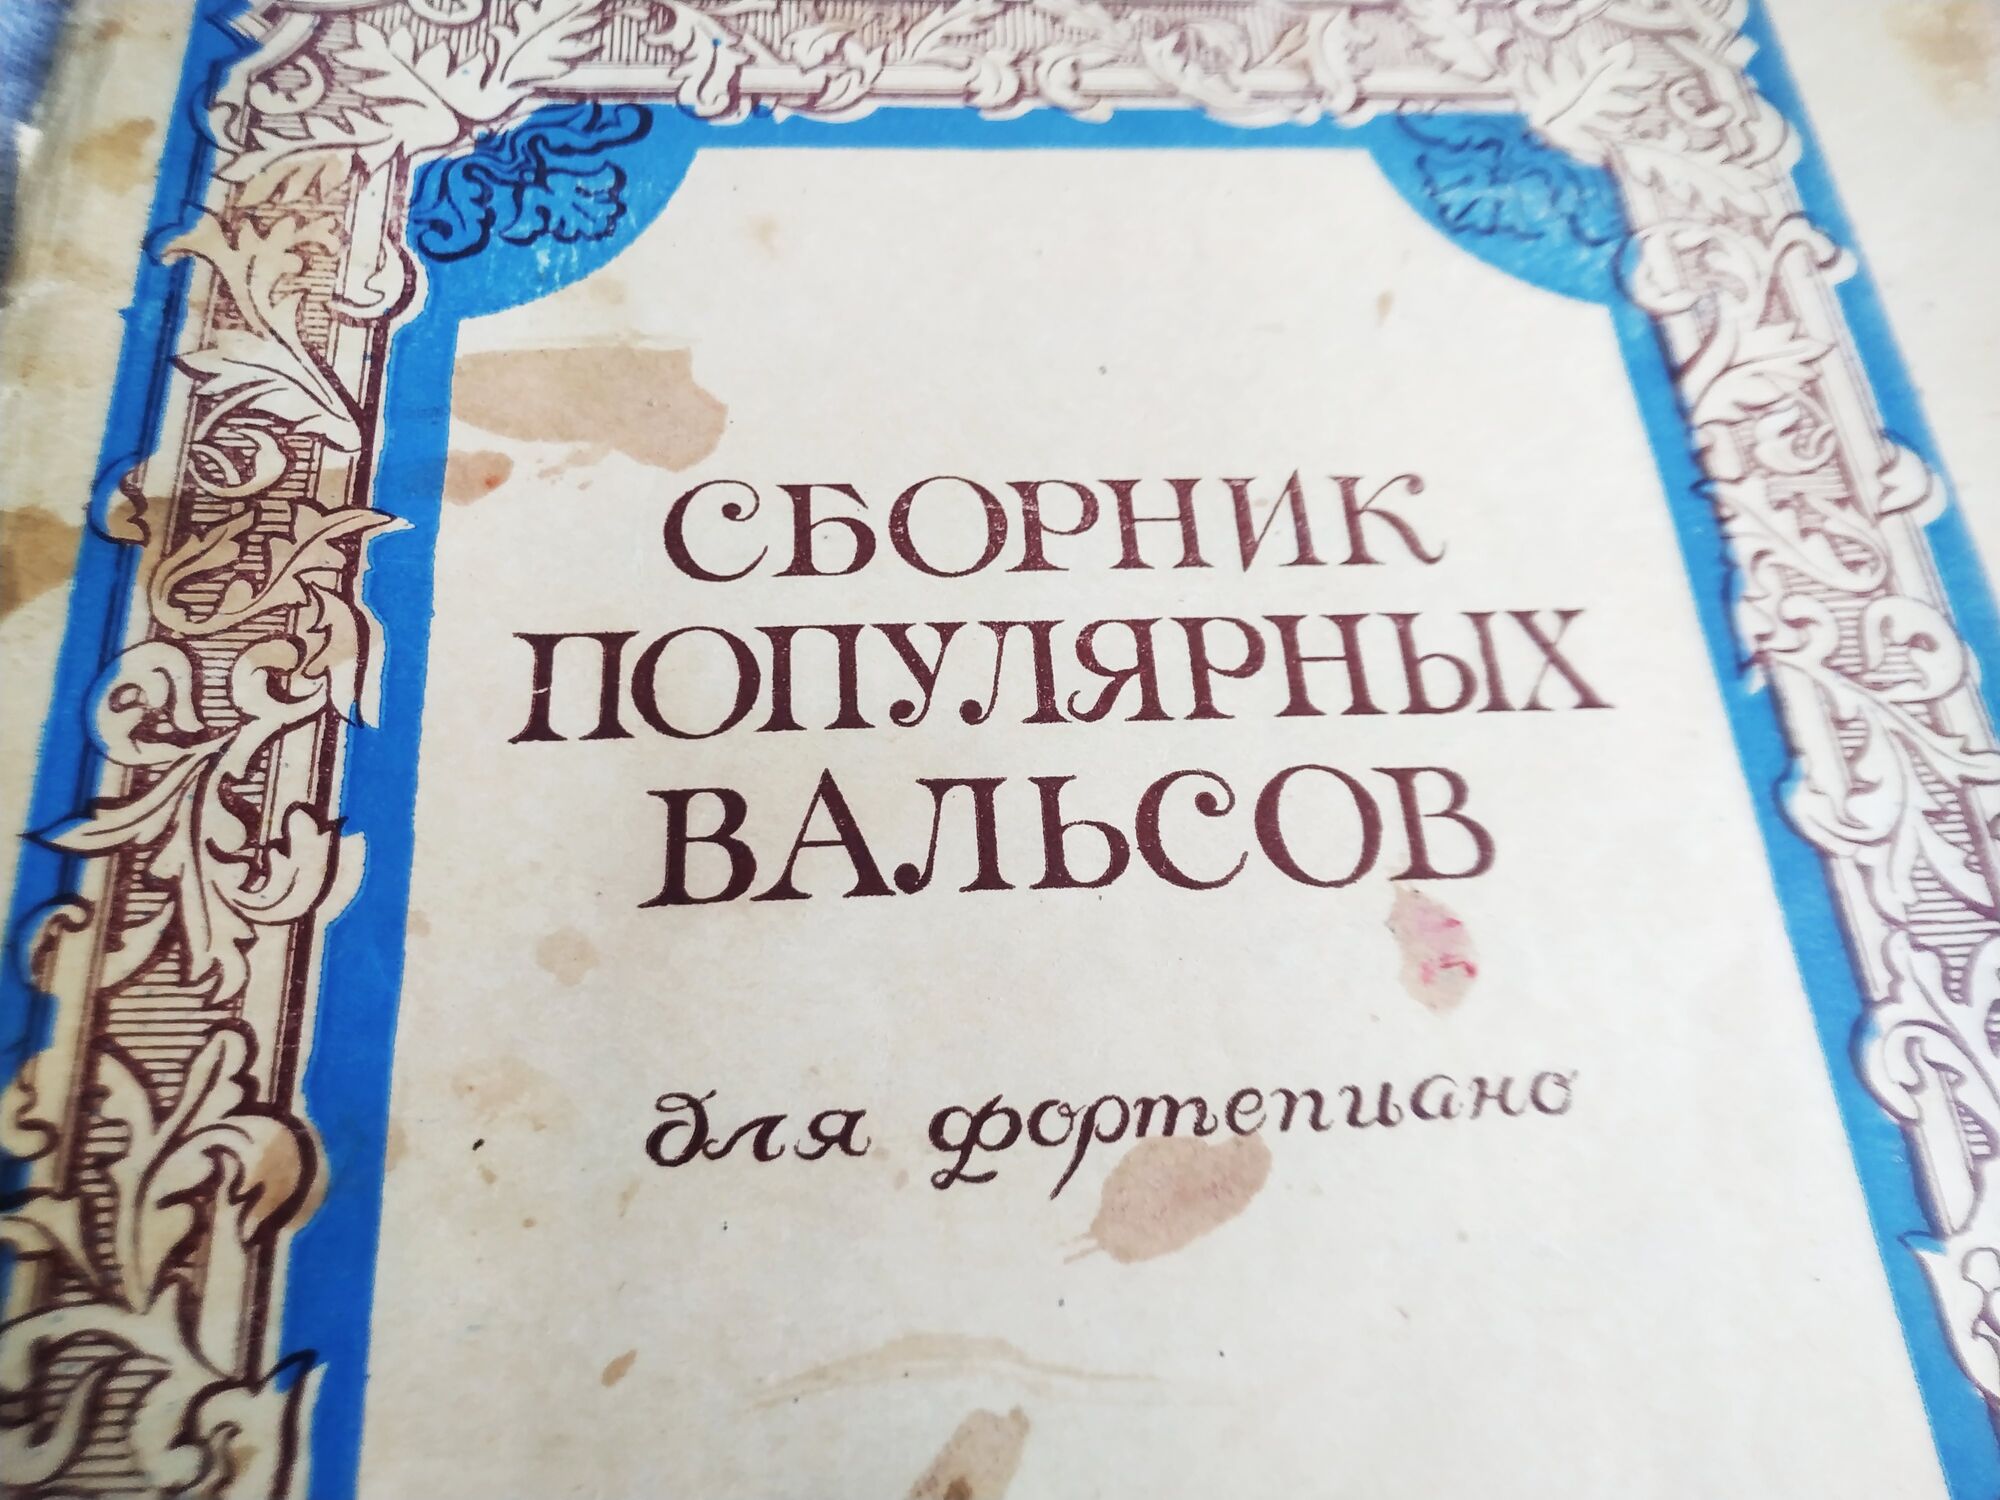 Сборник нот популярных вальсов. СССР